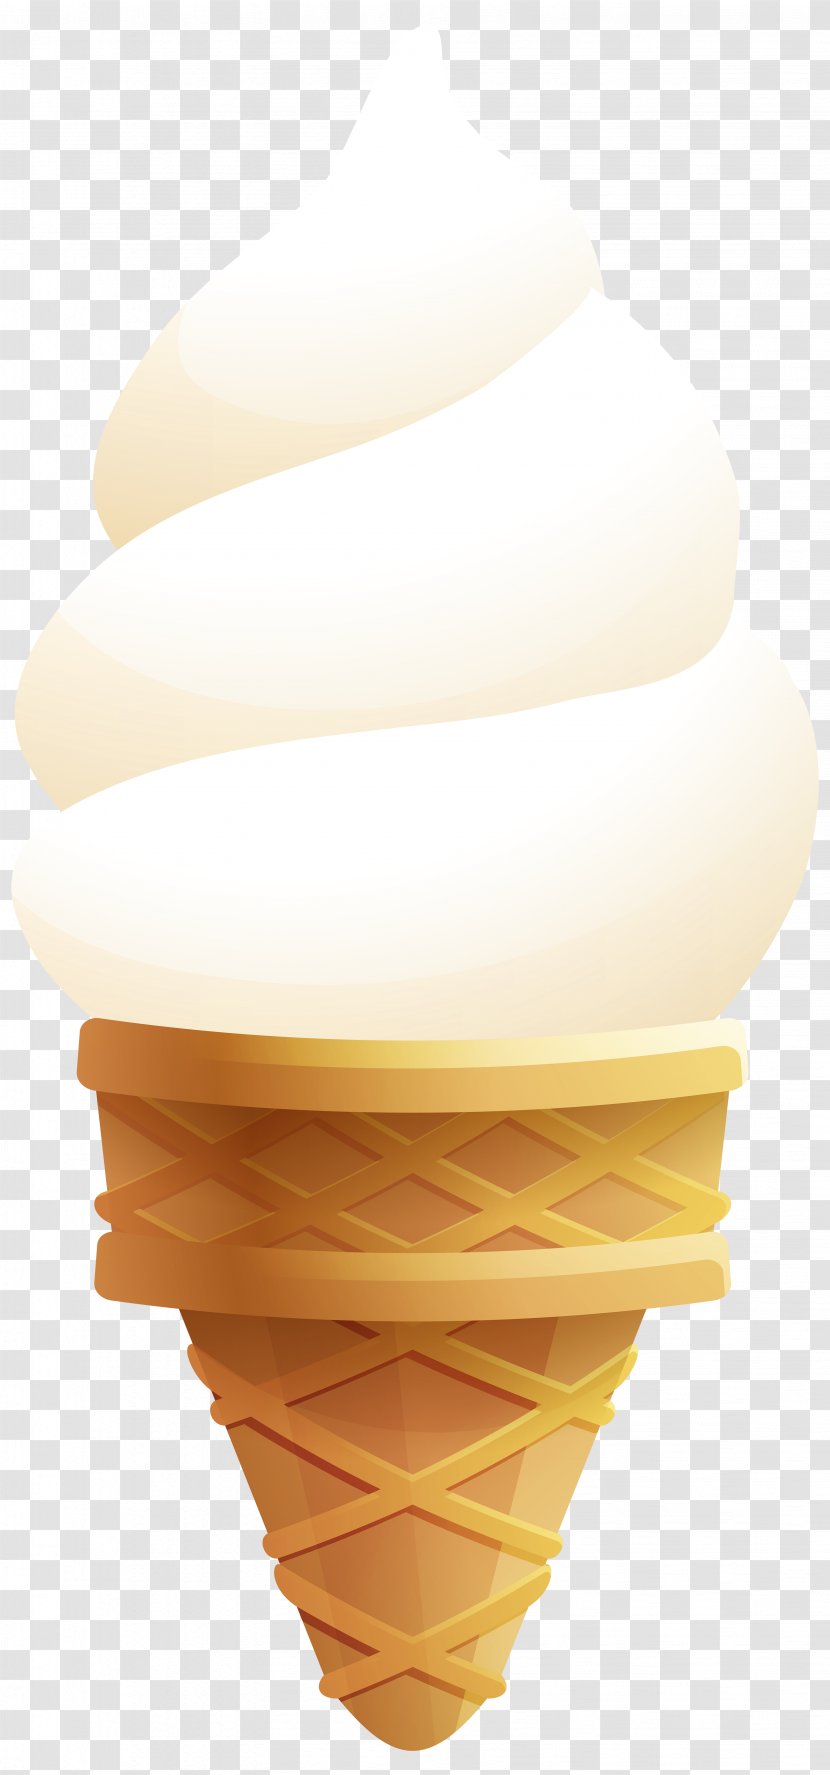 Ice Cream Cone Food - Flavor - Transparent Clip Art Image Transparent PNG